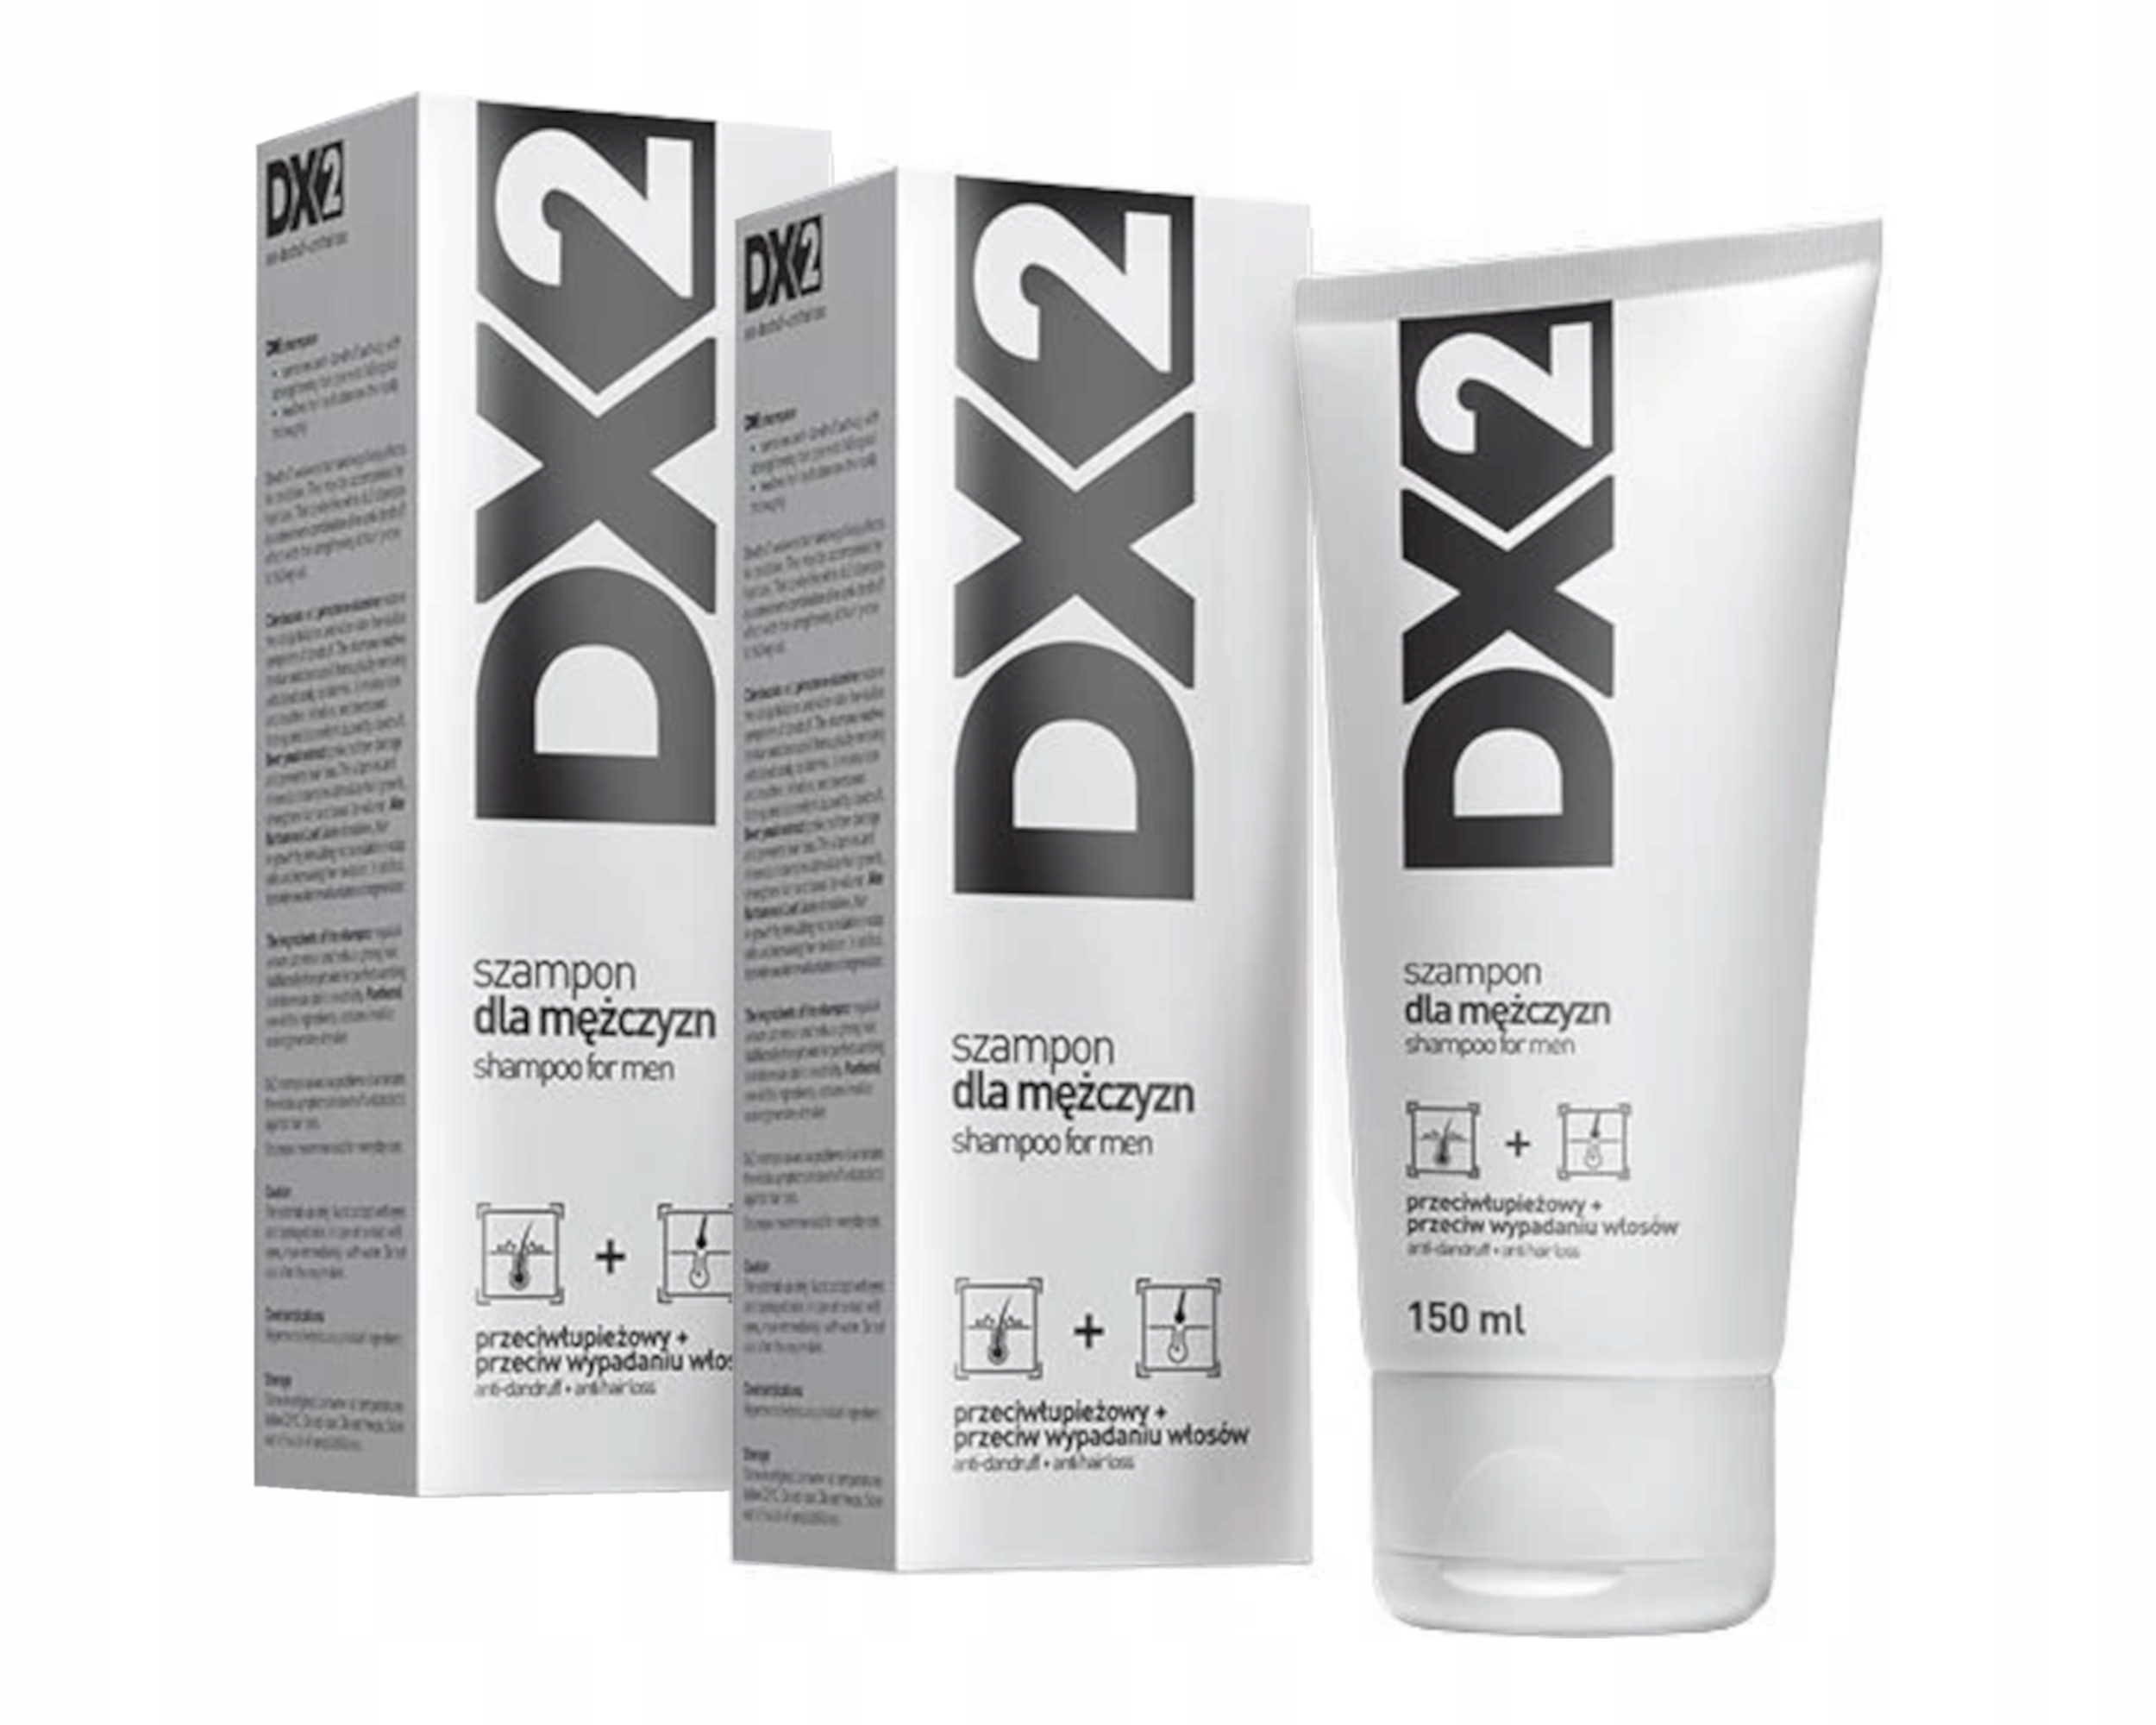 szampon na siwizne dx